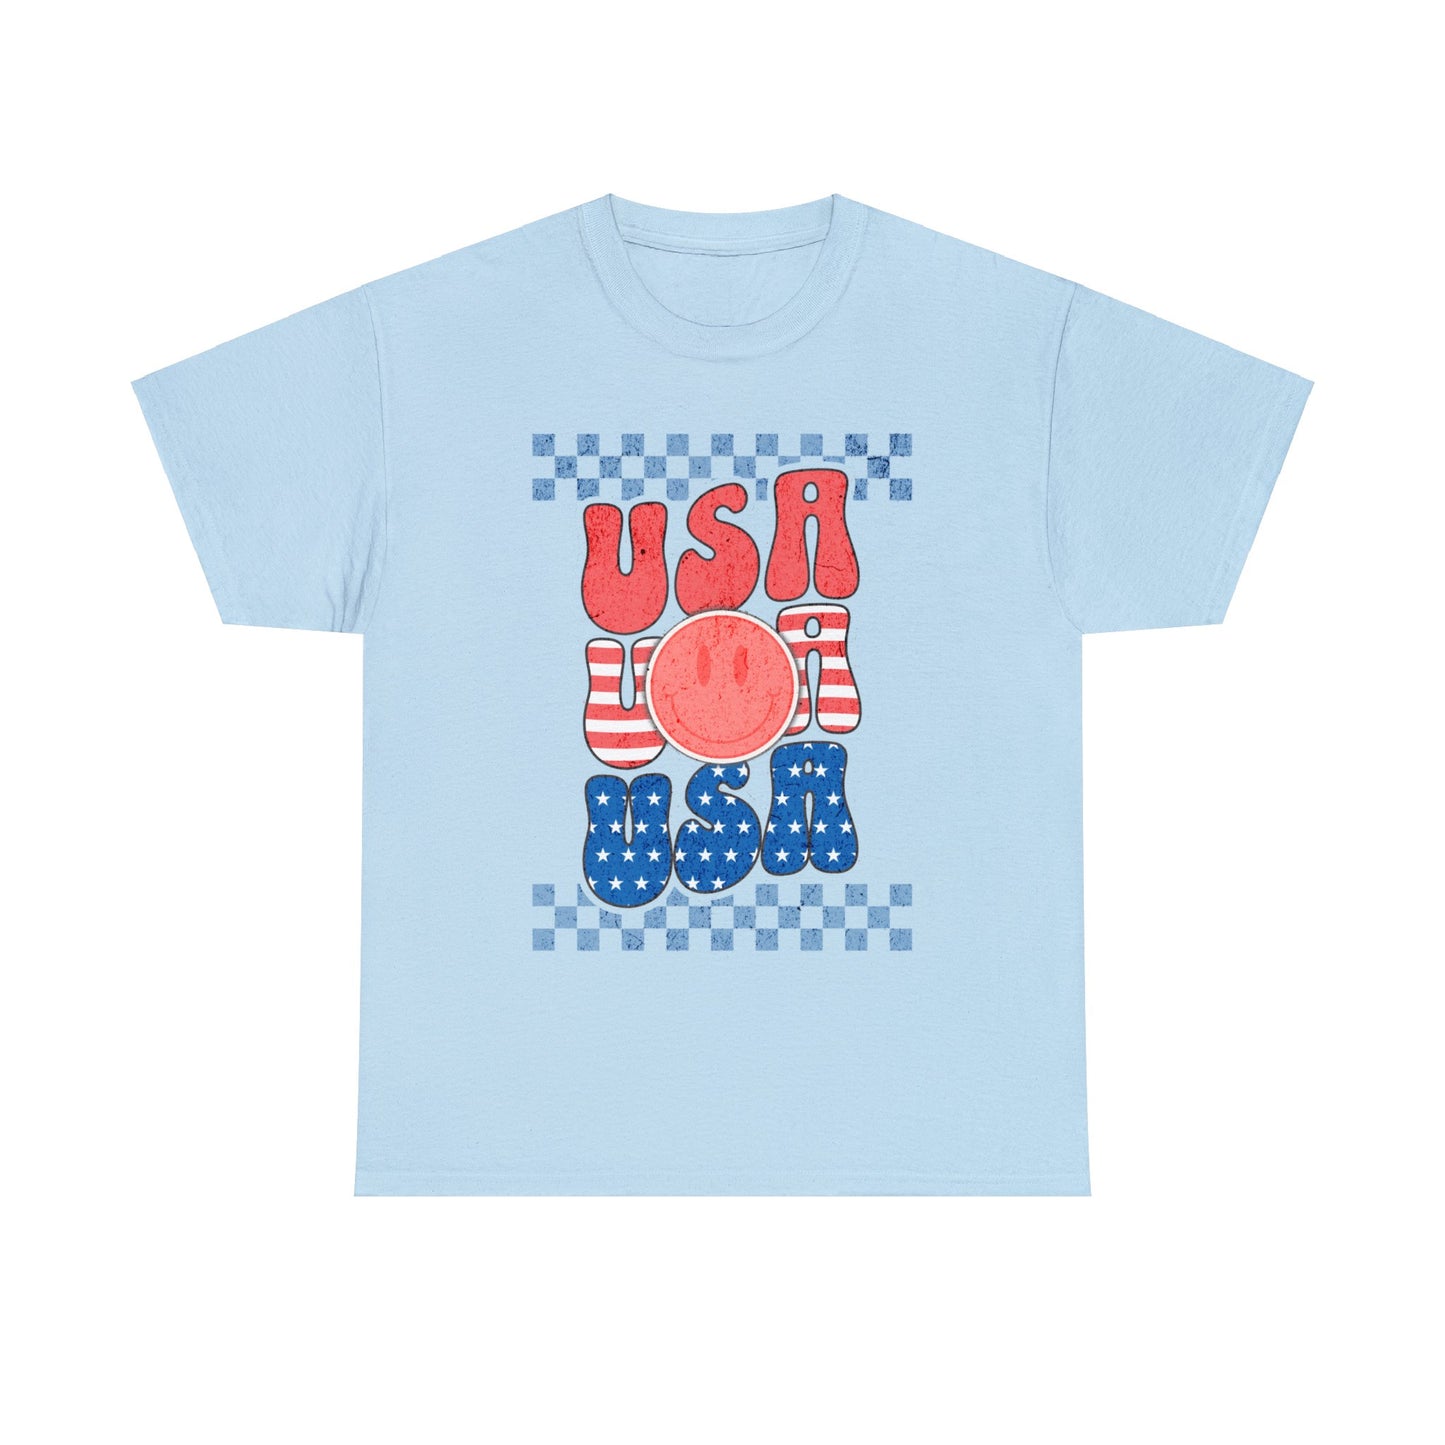 USA USA USA - Unisex T-Shirt